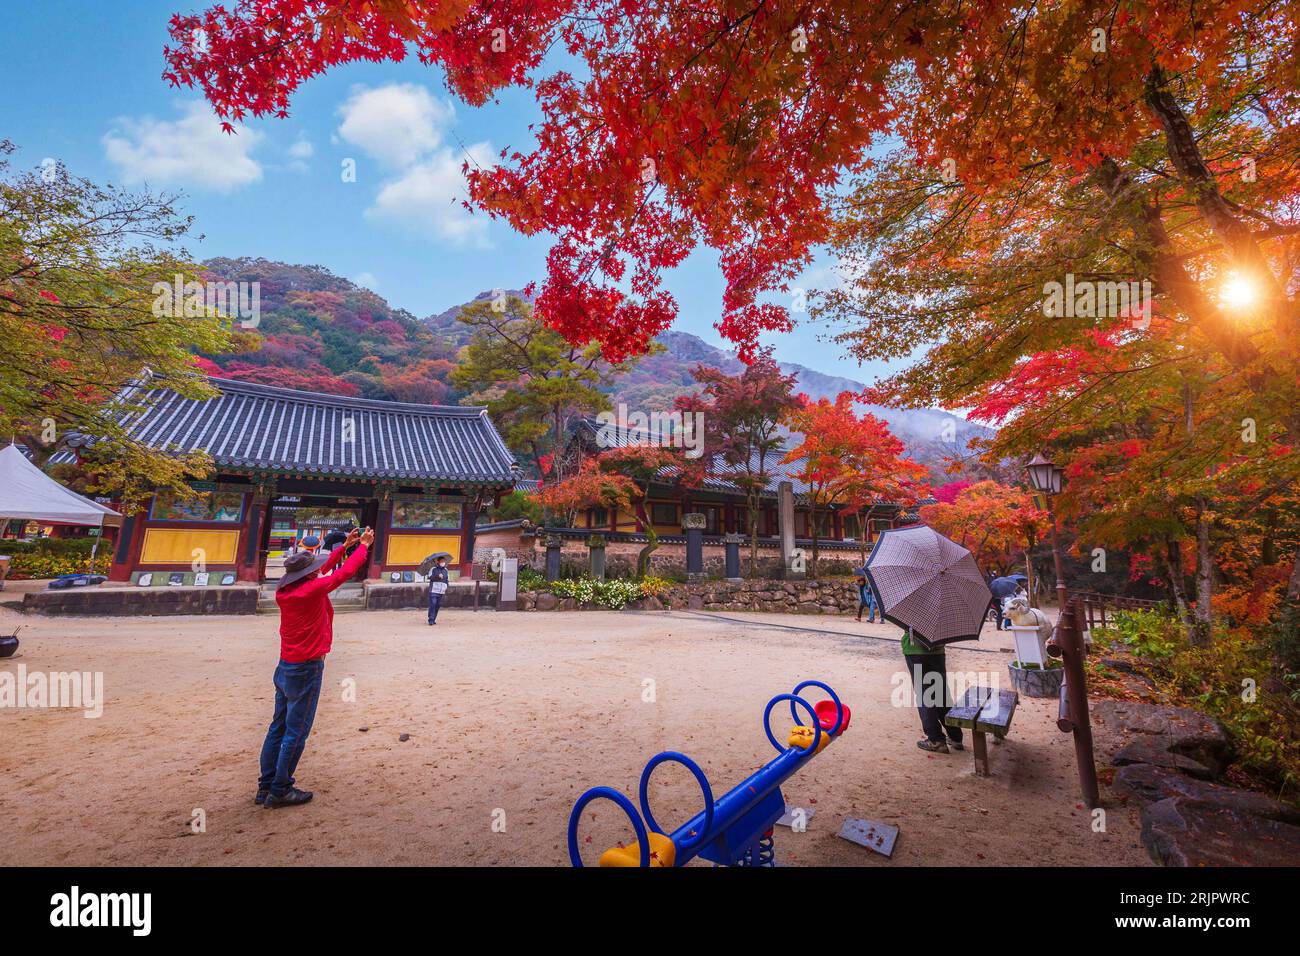 Parc national de Naejangsan , automne en Corée et érable dans le parc, Corée du Sud. Banque D'Images